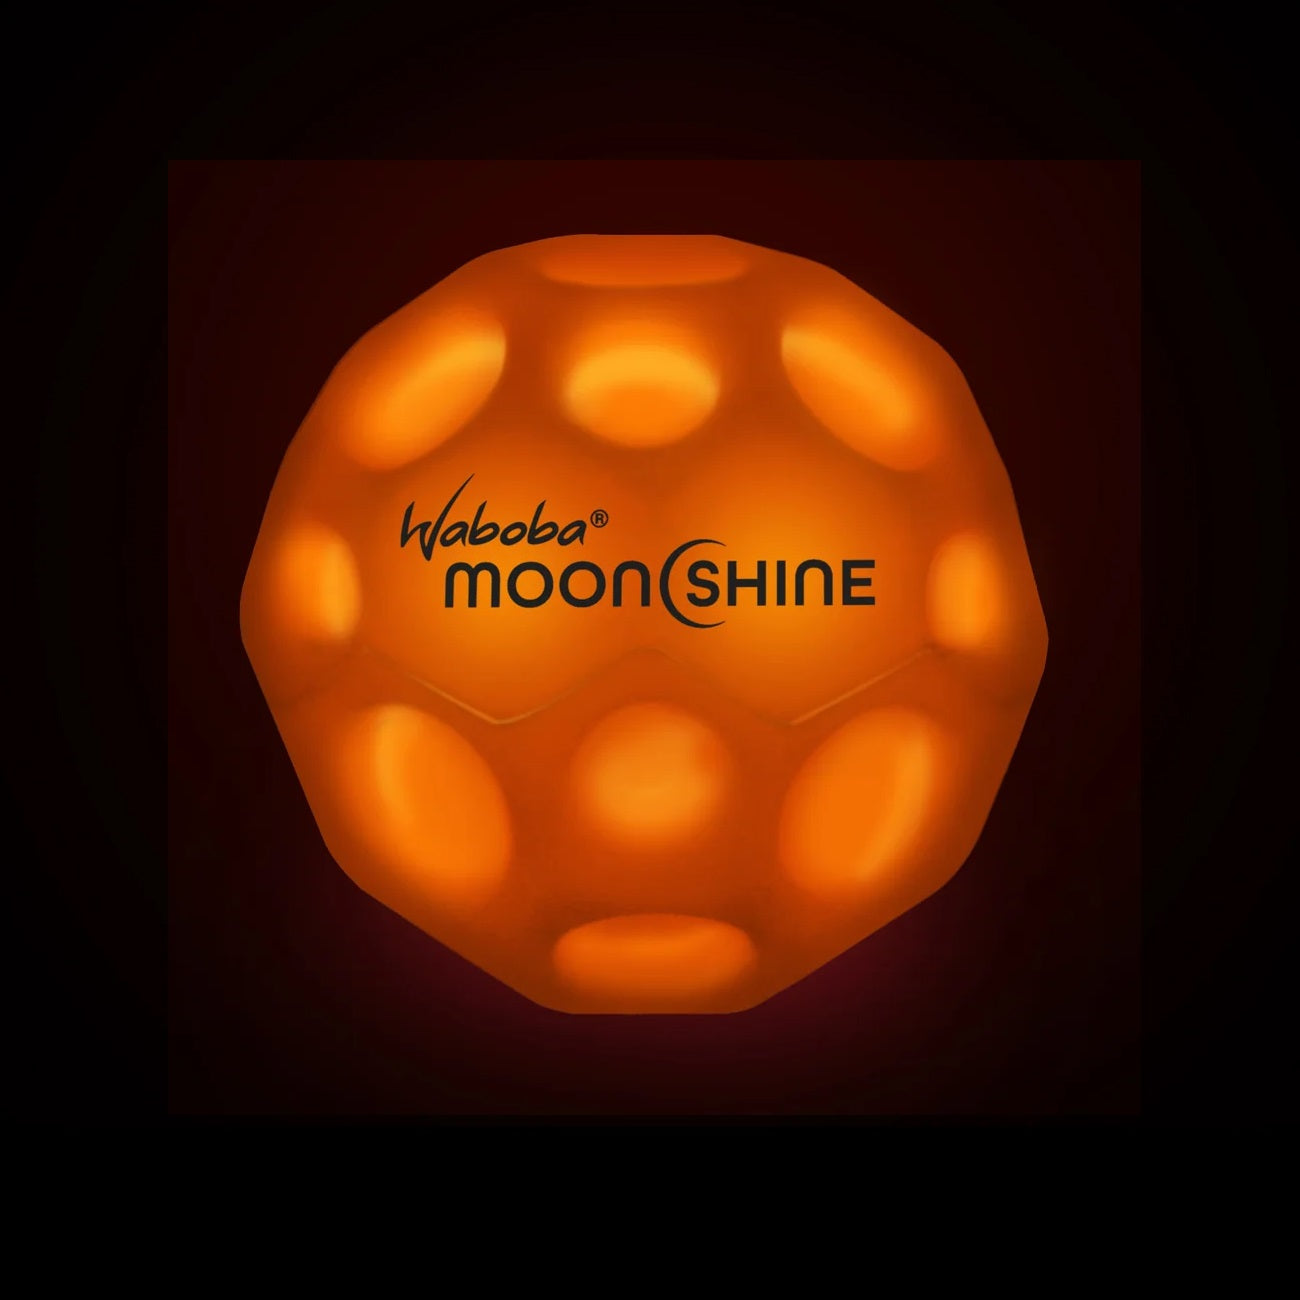 Moonshine 2.0